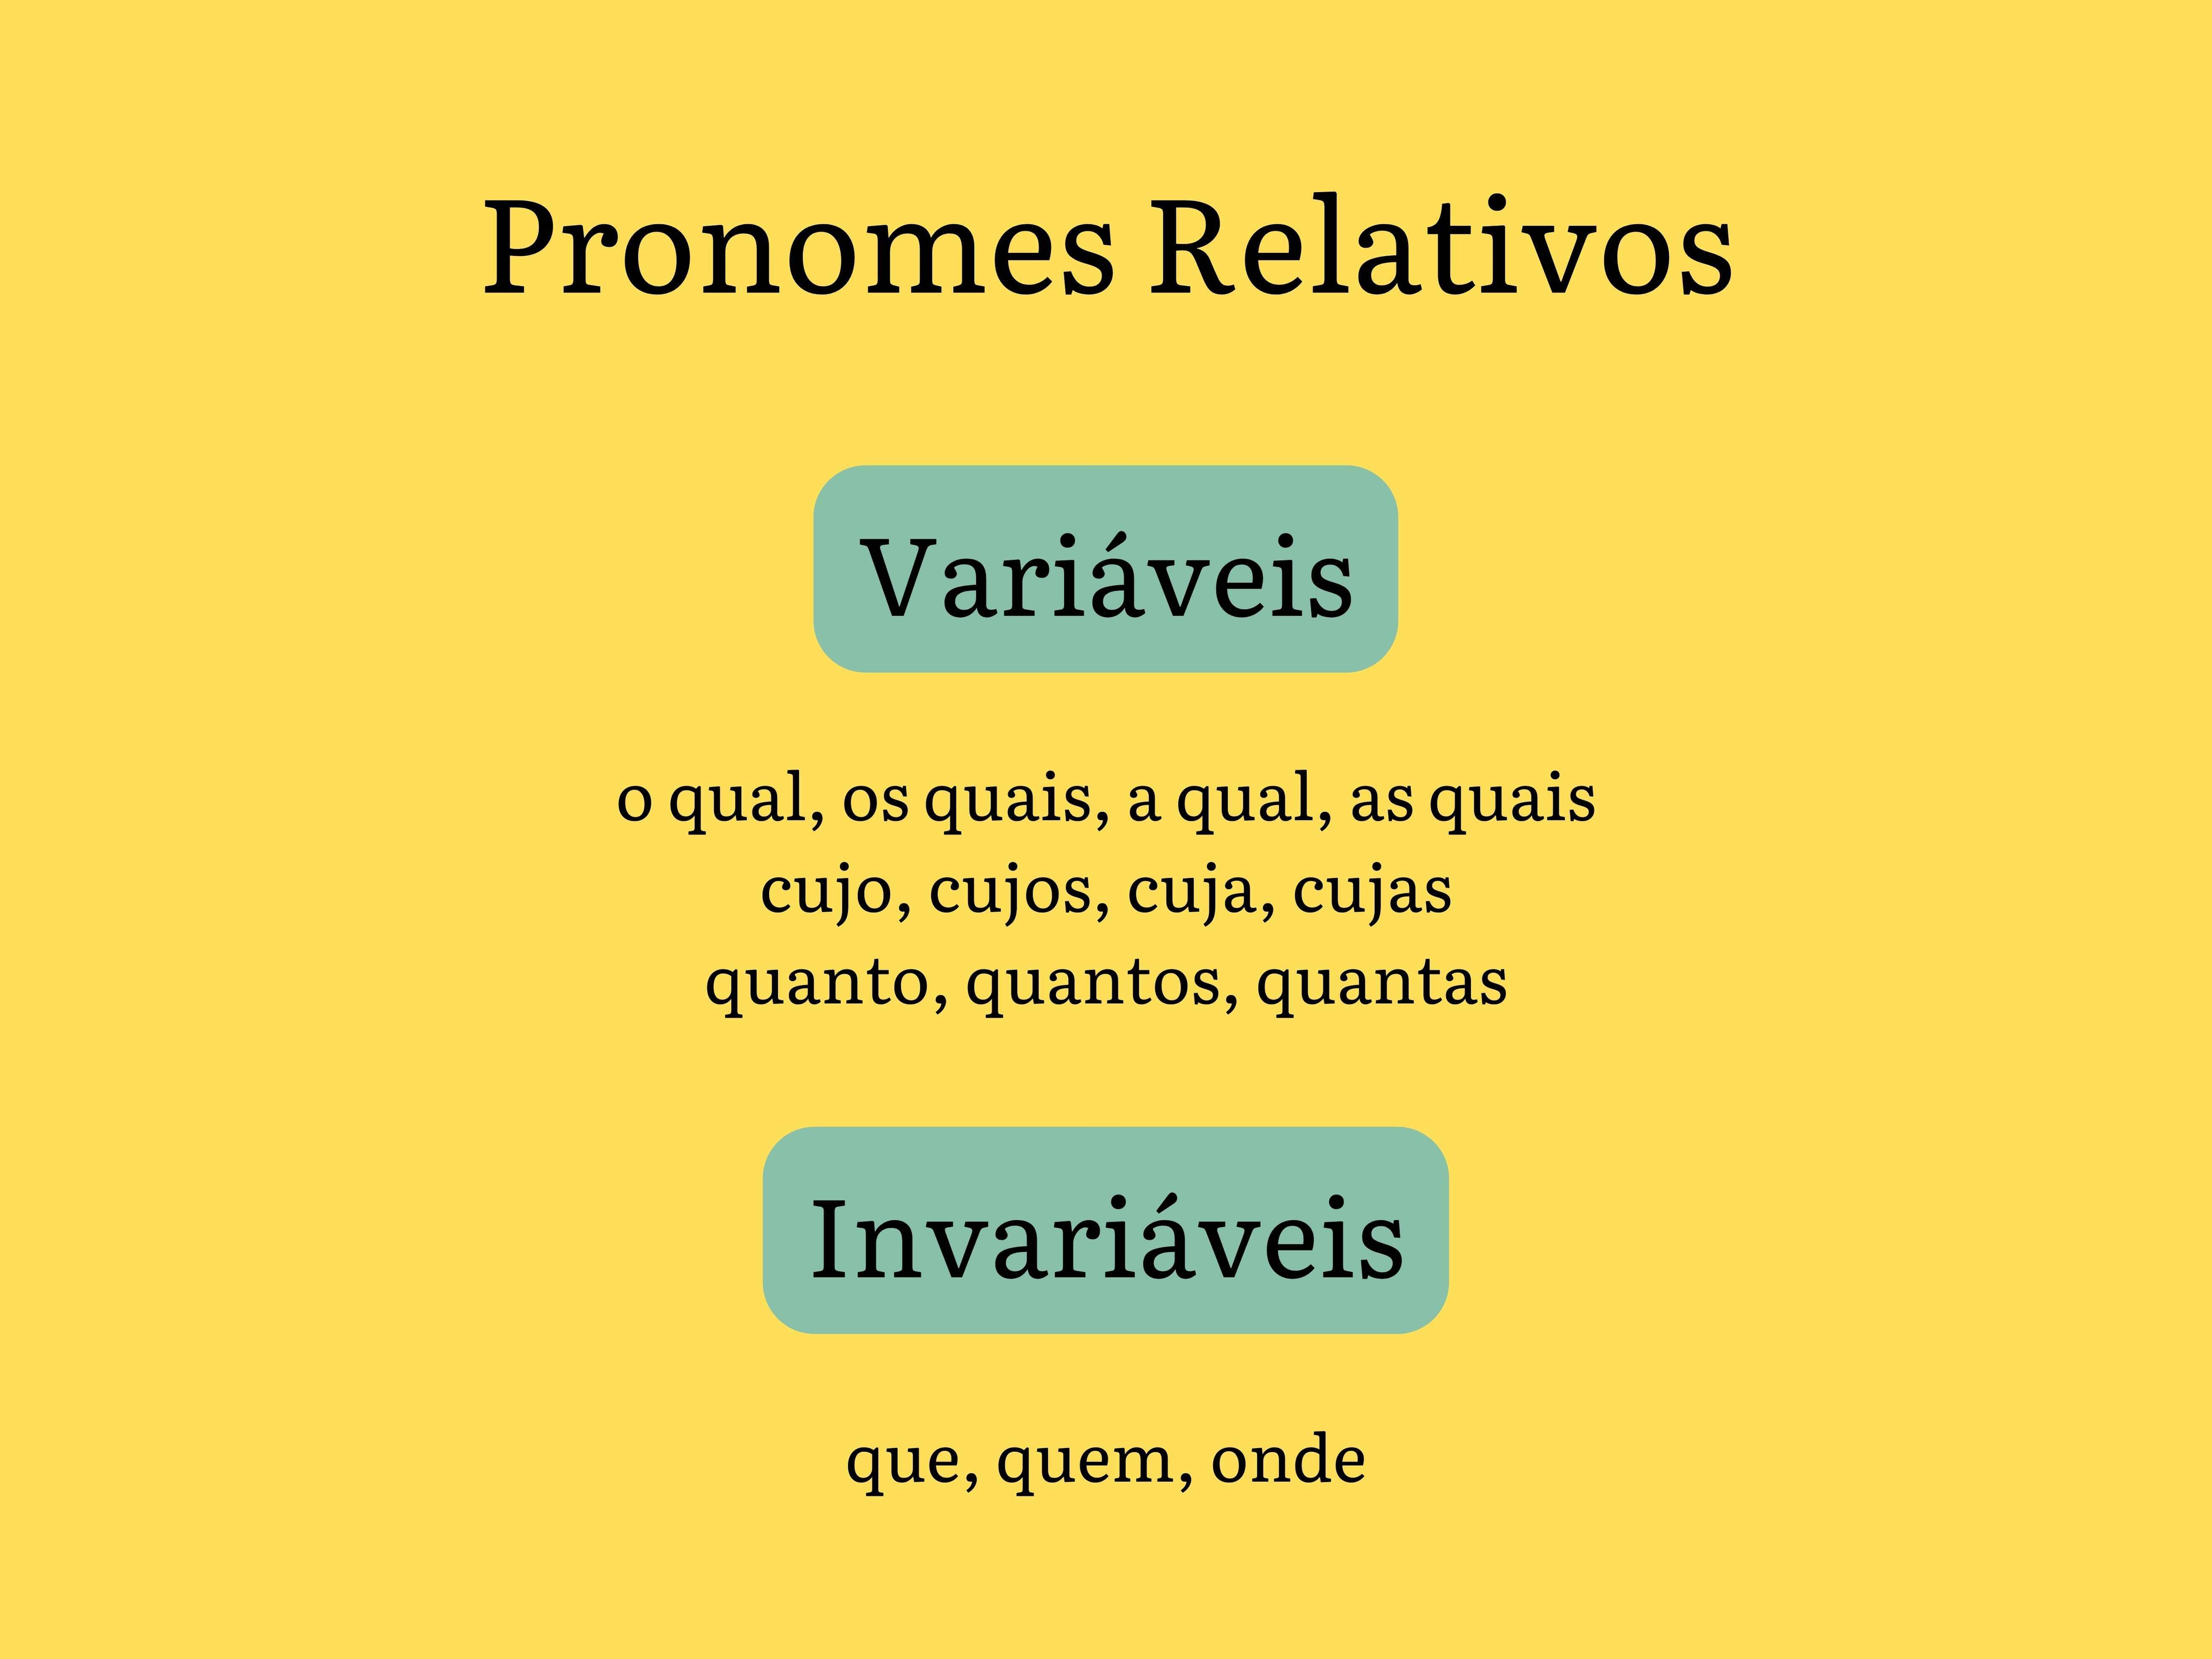 Pronomes relativos: quais são, funções, exemplos - Português